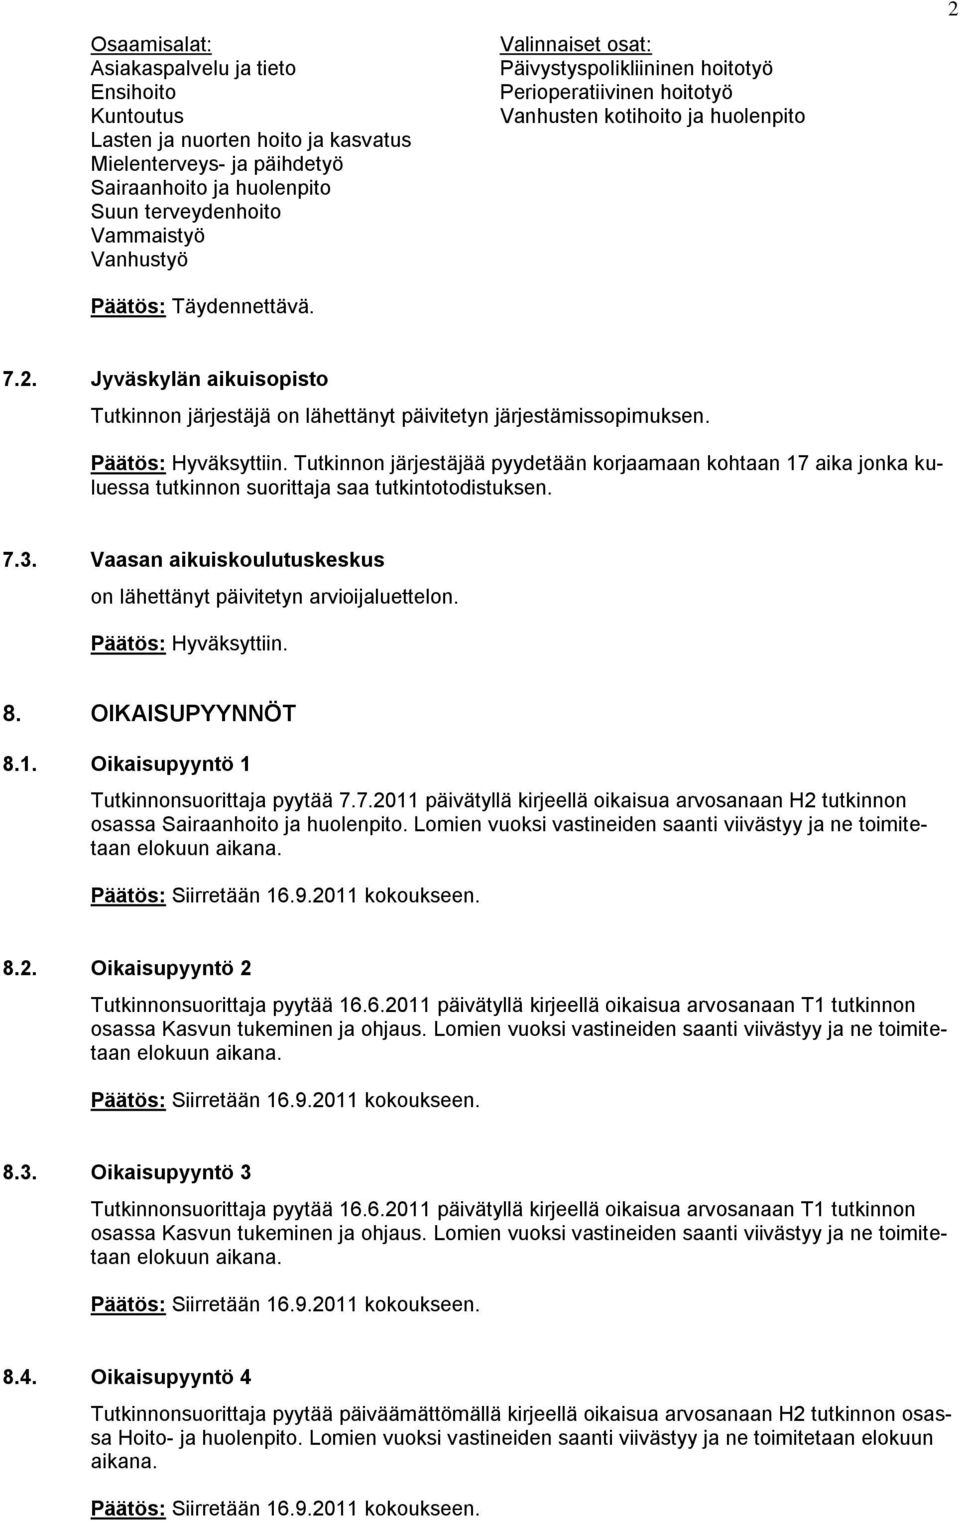 7.2. Jyväskylän aikuisopisto Tutkinnon järjestäjä on lähettänyt päivitetyn järjestämissopimuksen.